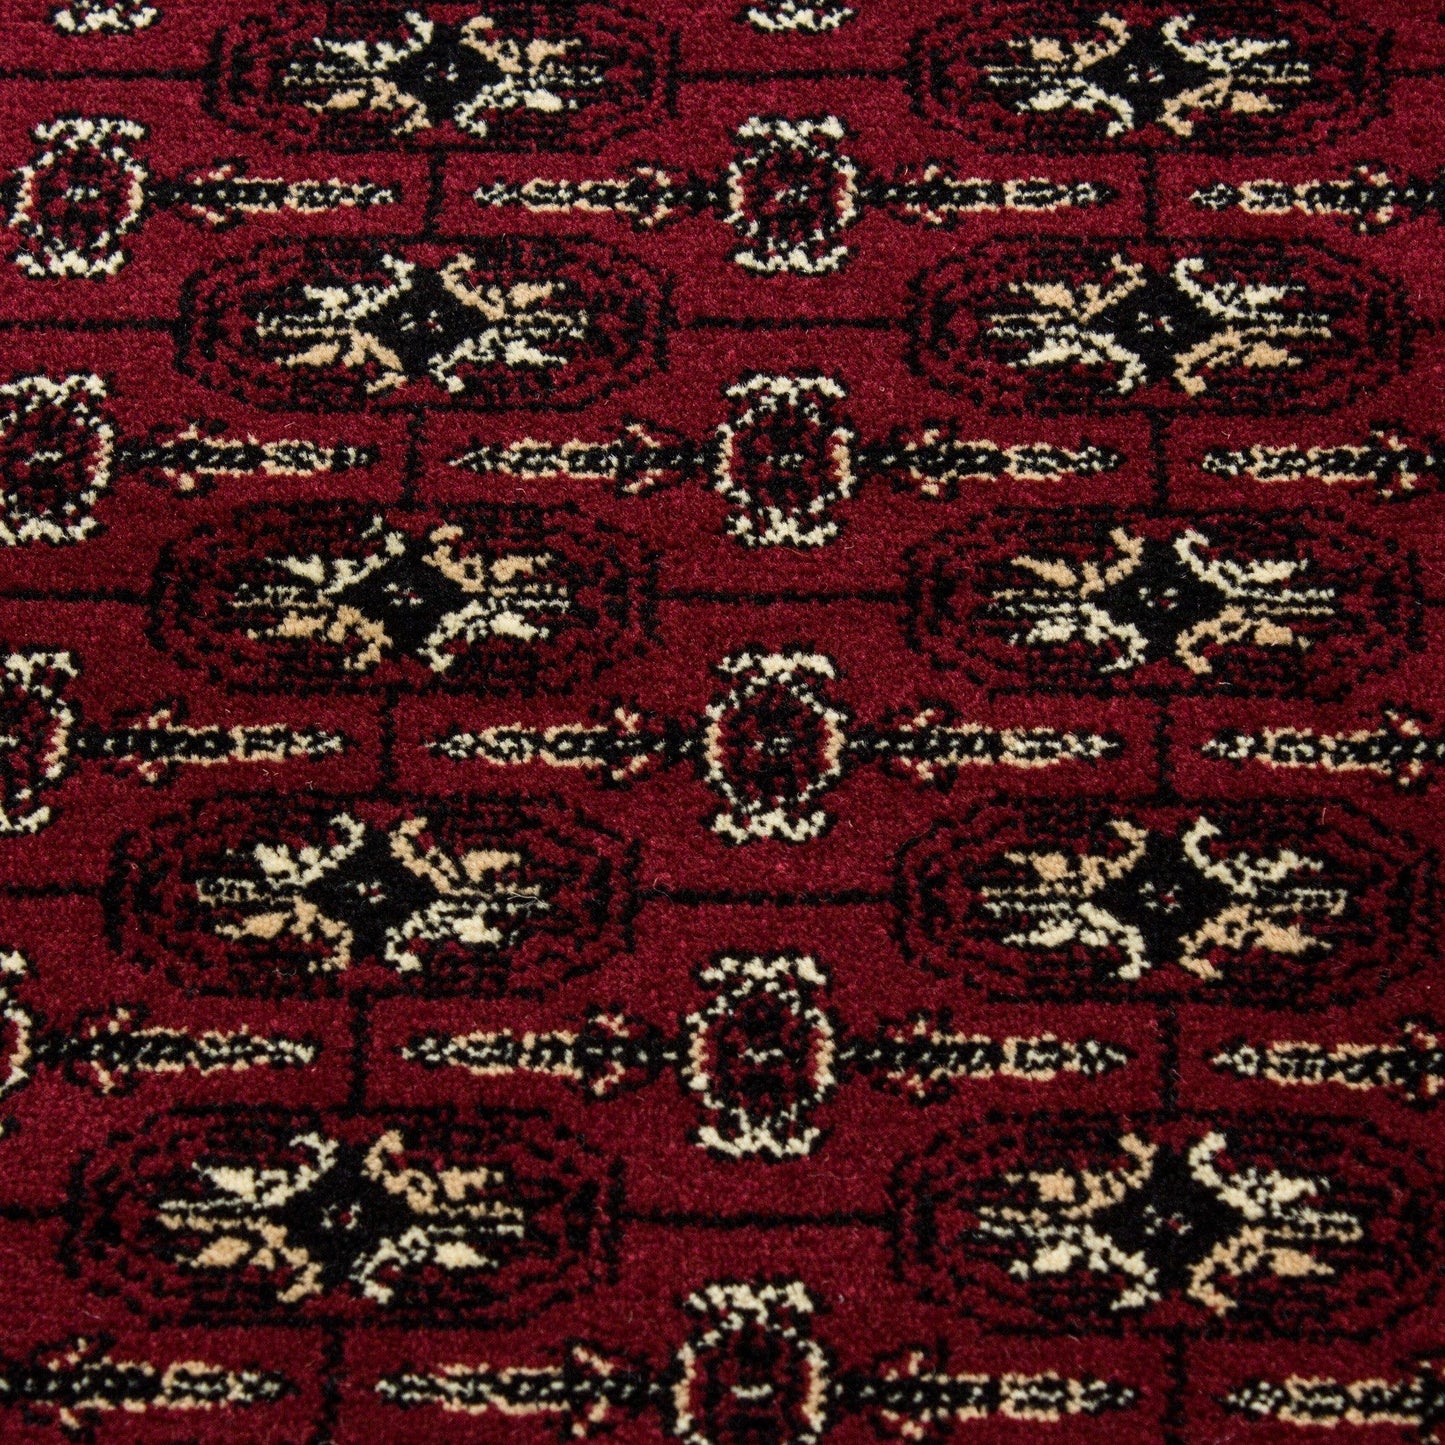 MARRAKESH0351RED Tæppe (160 x 230) - Rød